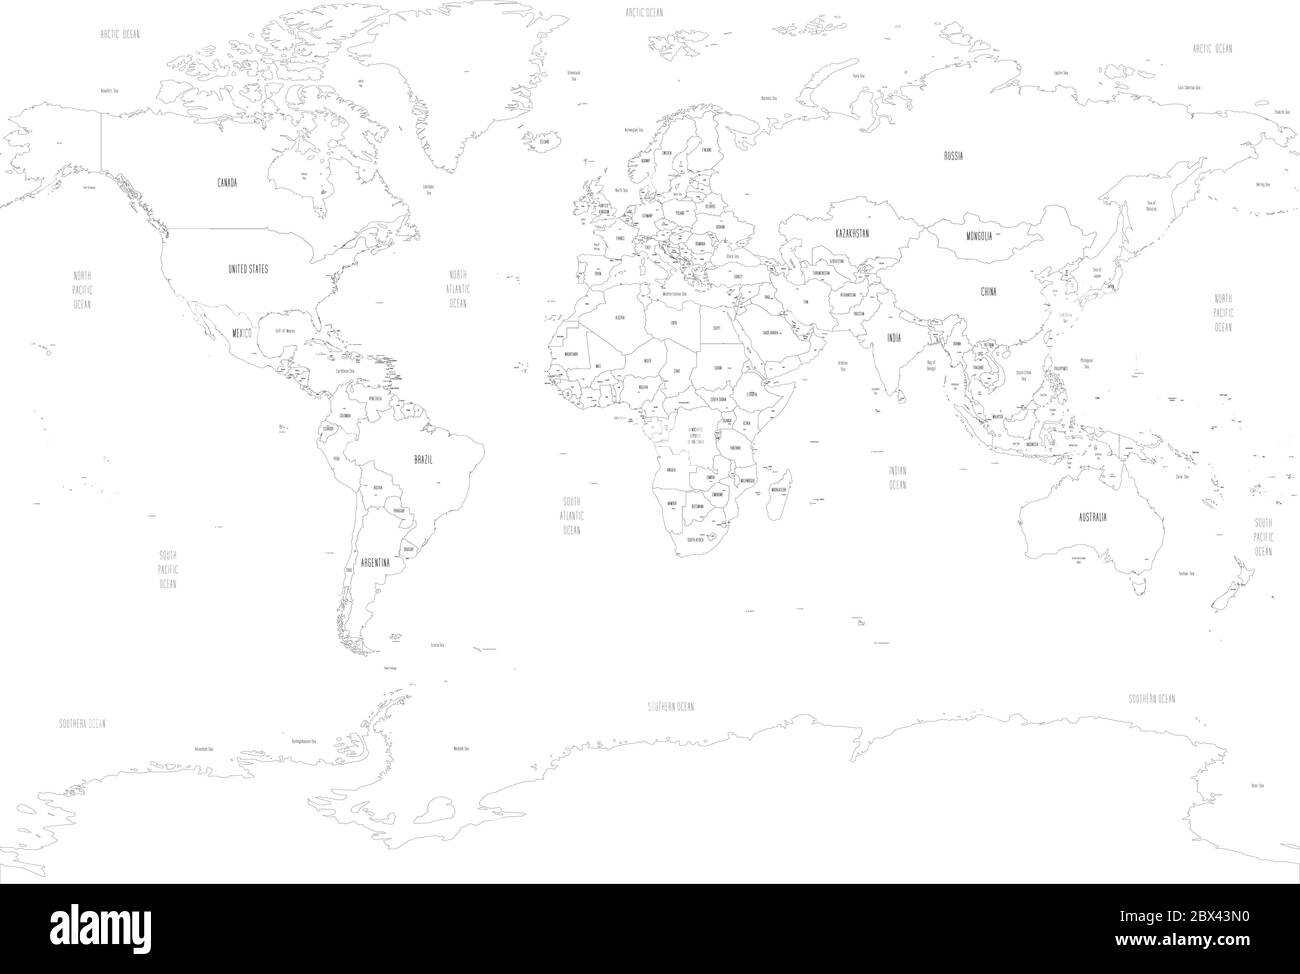 Mappa politica del mondo con le capitali dei paesi. Stile disegnato a mano. Illustrazione vettoriale. Illustrazione Vettoriale